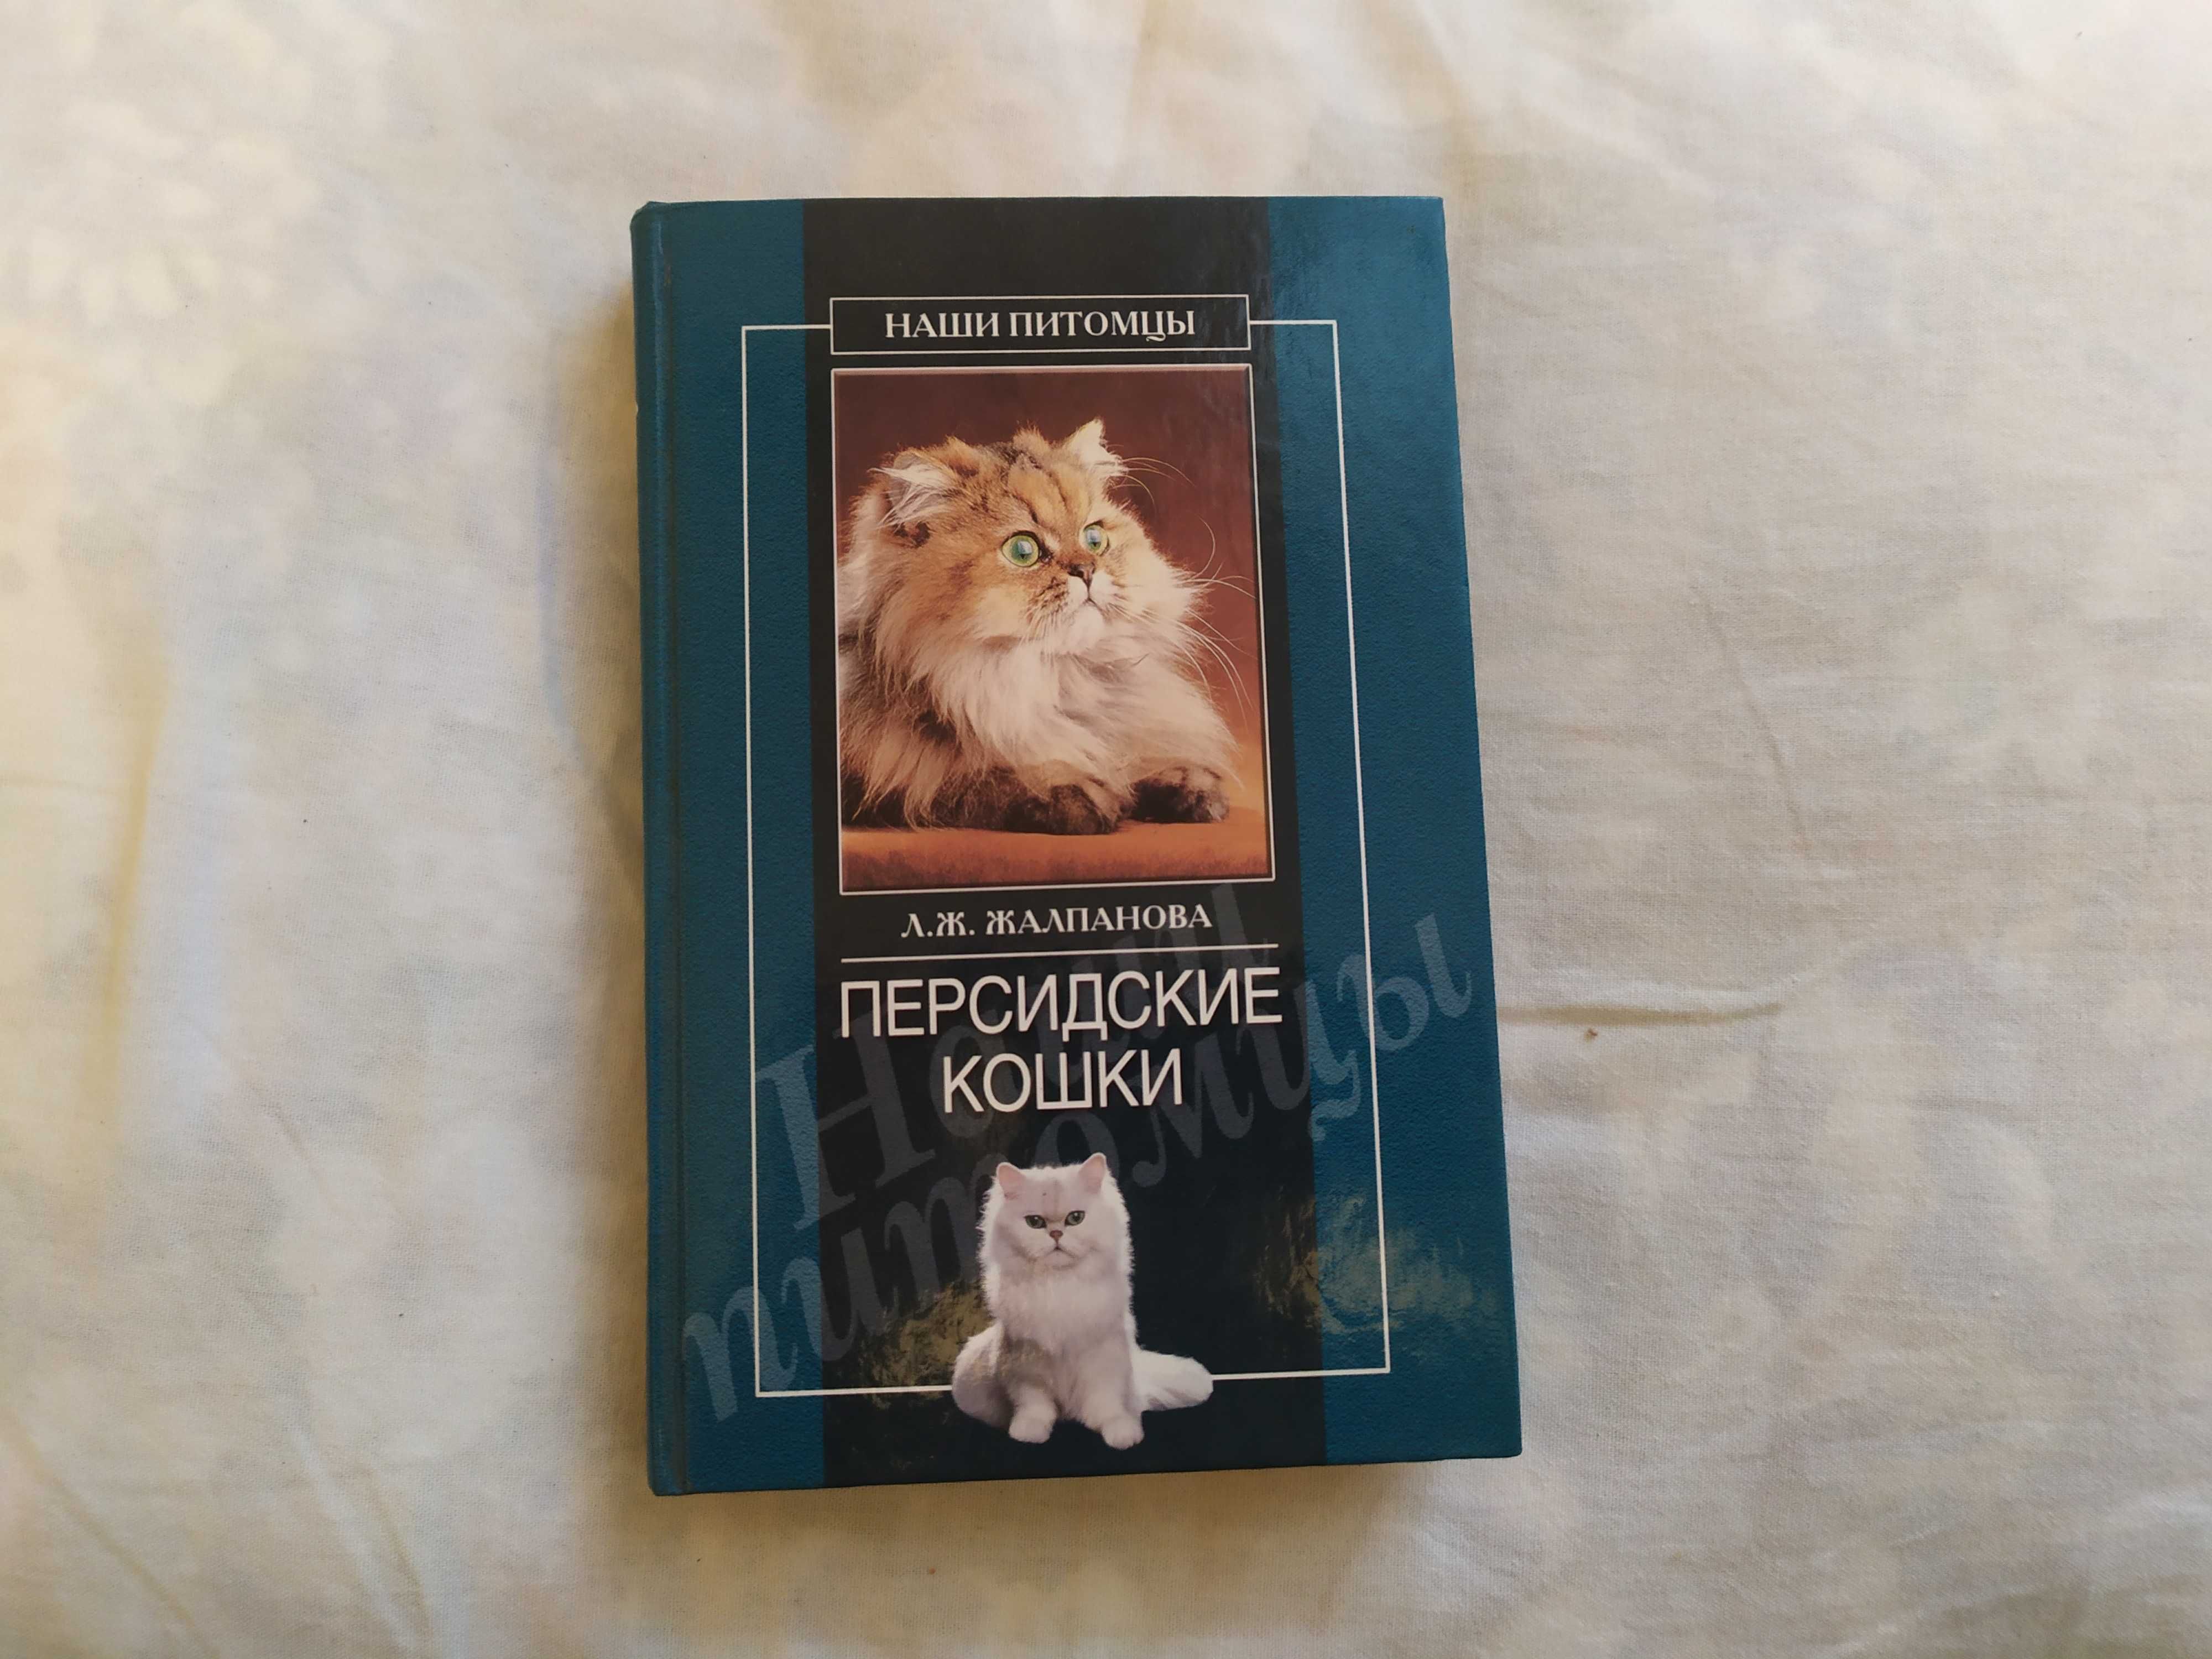 "Персидские кошки" Л.Ж. Жалпанова